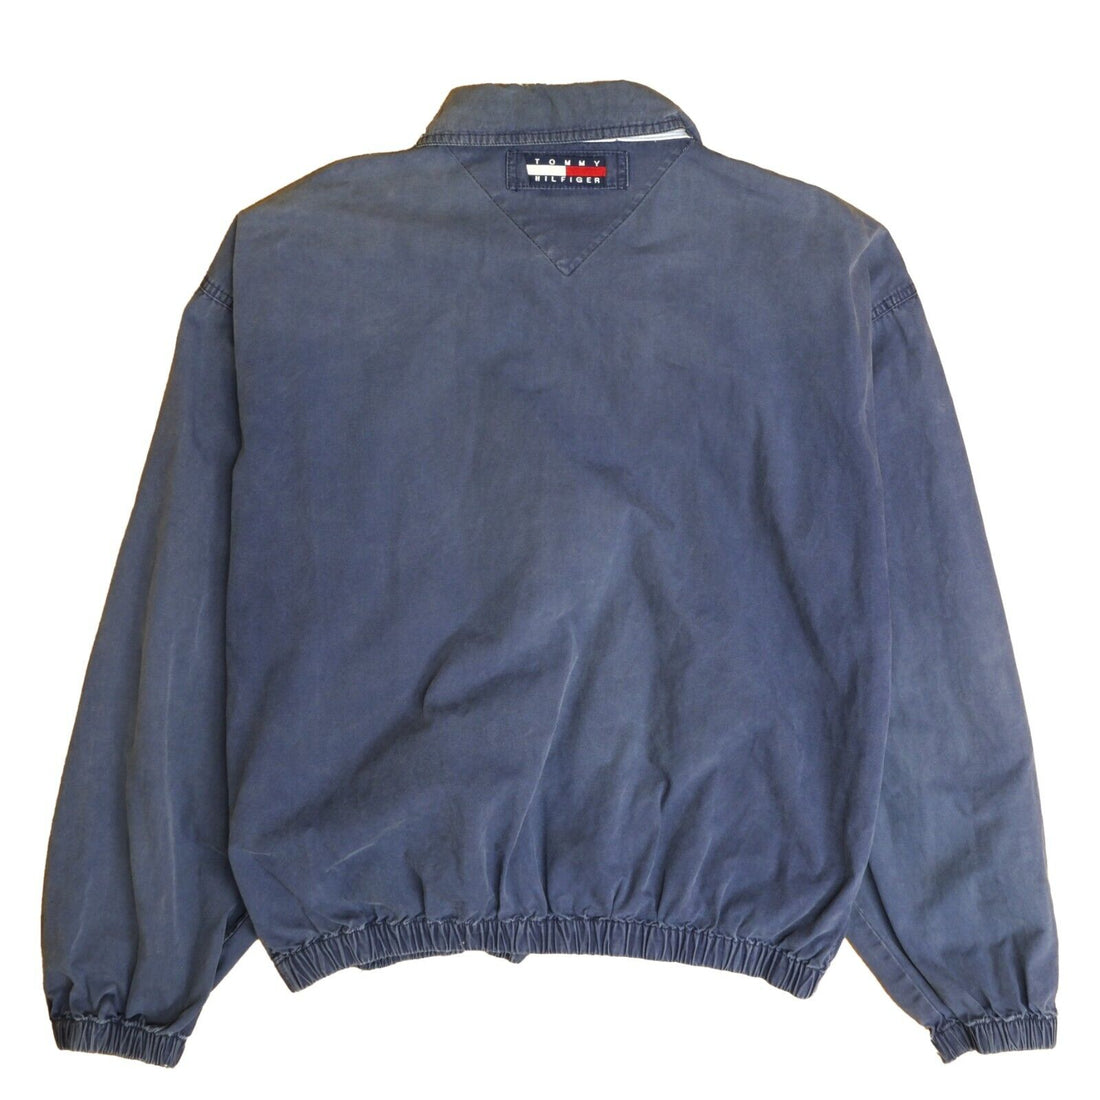 Vintage Tommy Hilfiger Harrington Jacket Size Large Blue